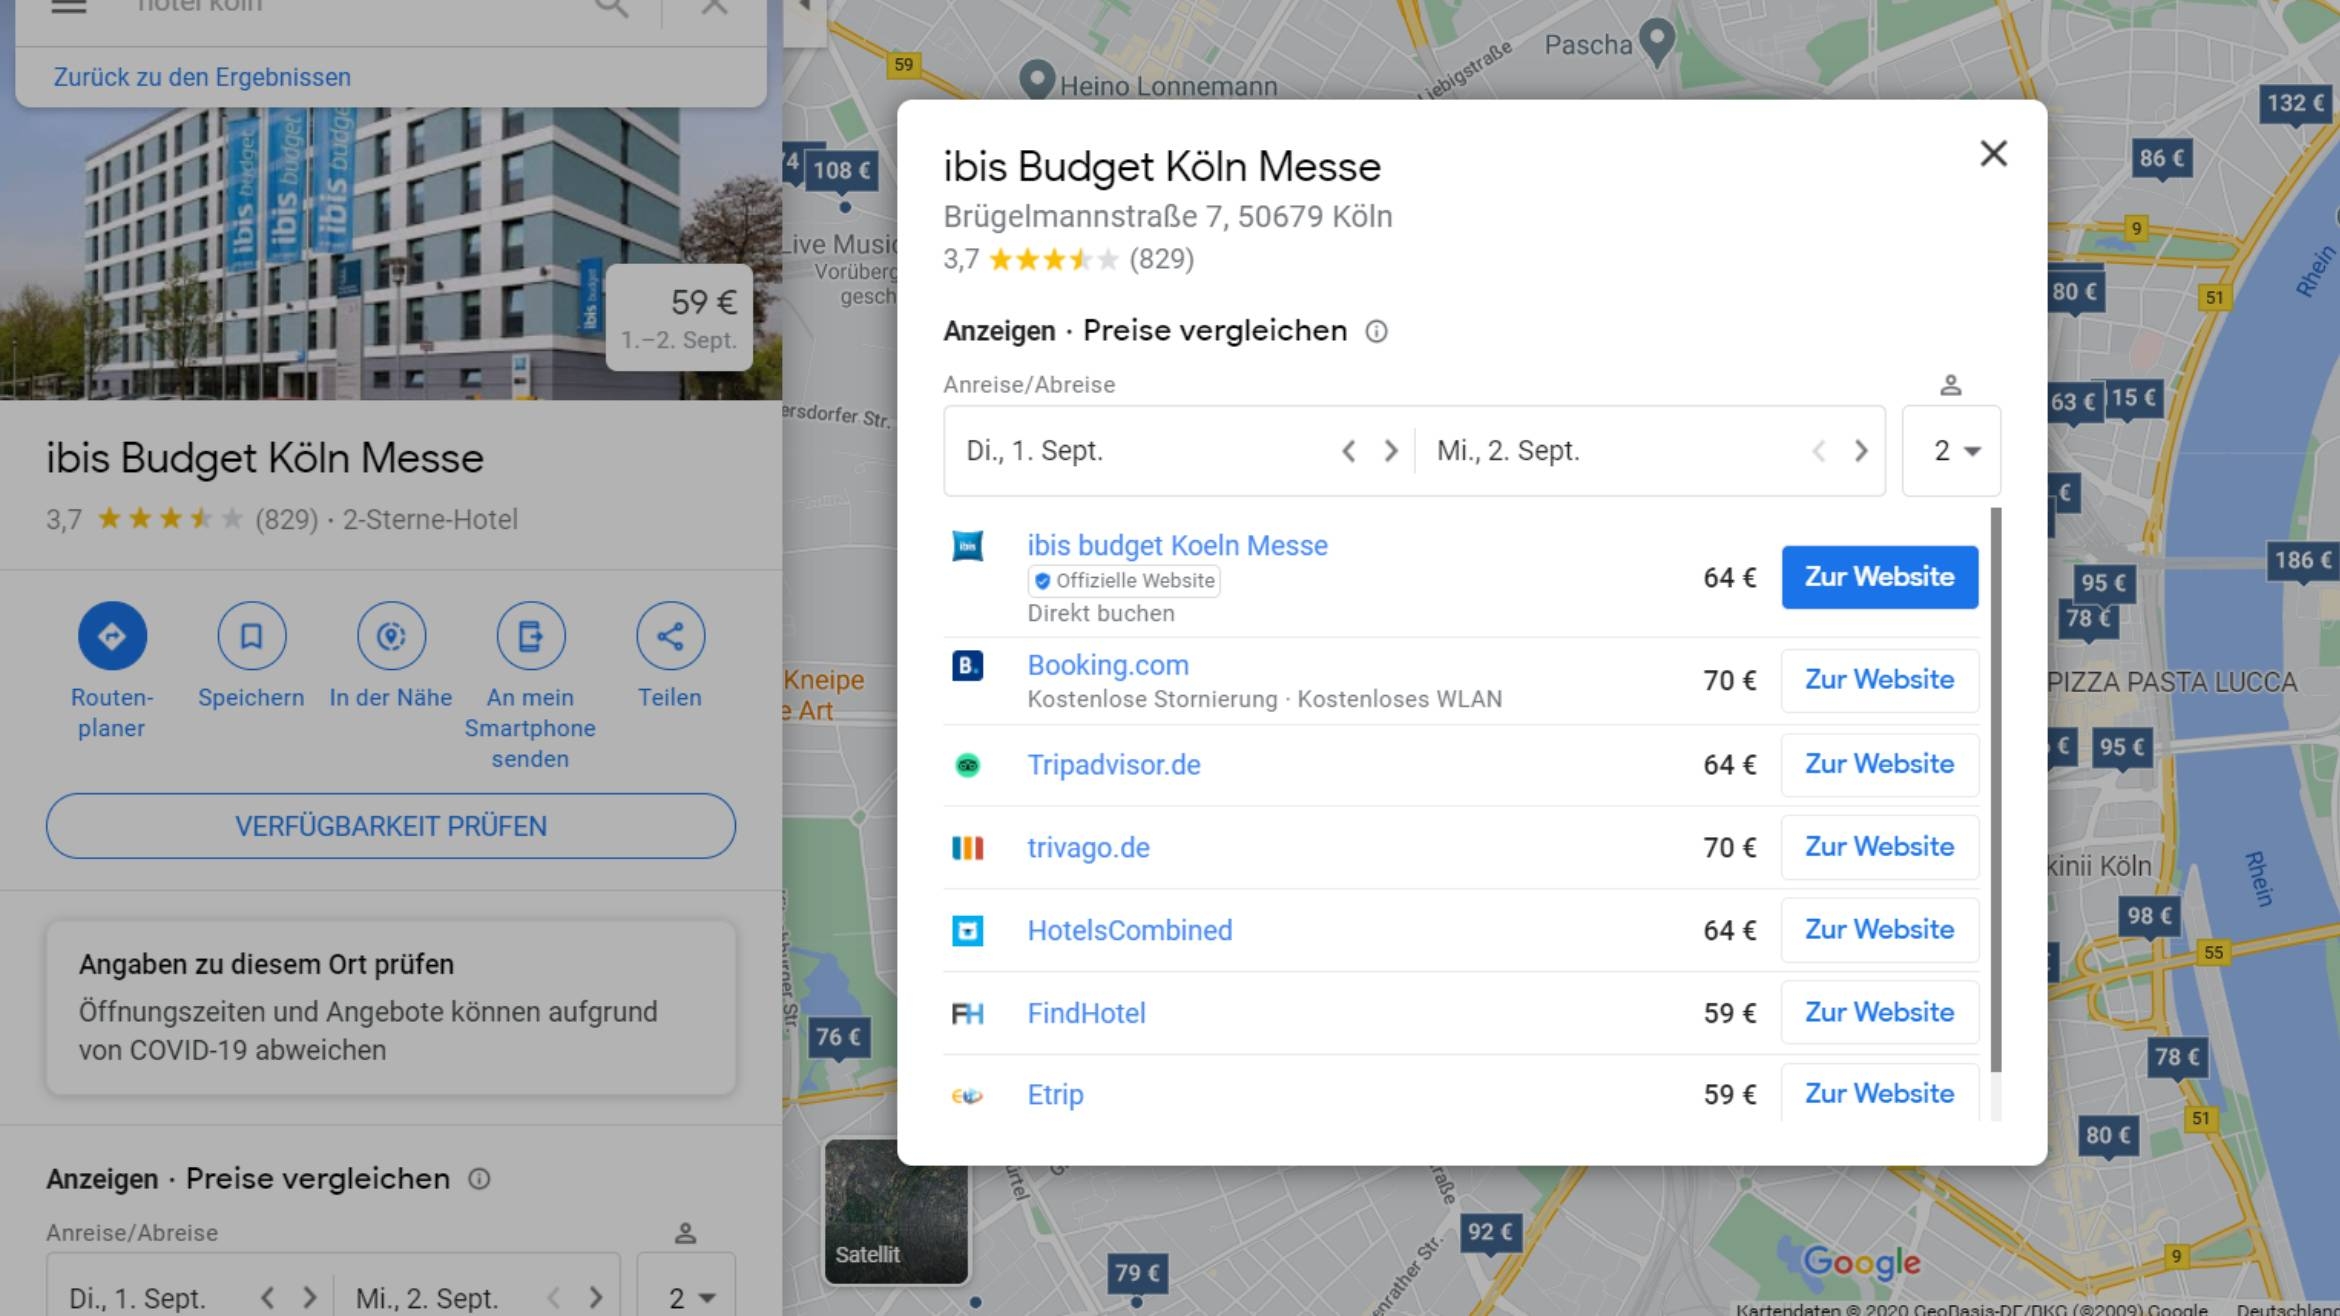 Der Hotelfinder von Google deutet an, wie ein mögliches Vermarktungsmodell für Eintrittskarten aussehen könnte –